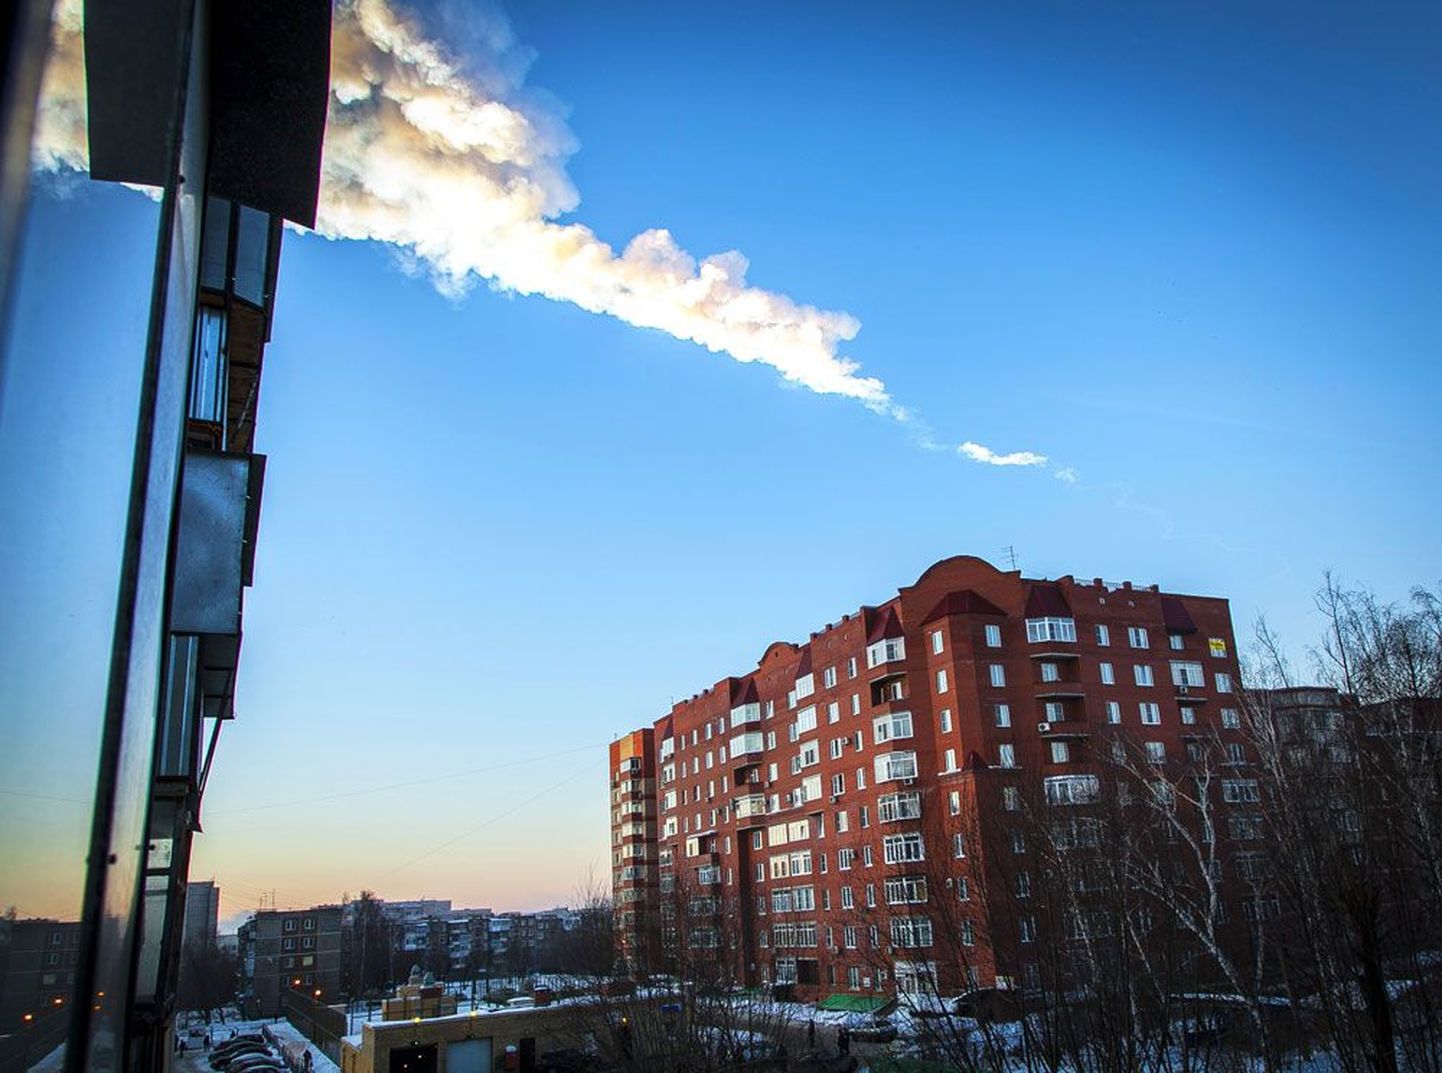 Meteoriidijälg eile hommikul Tšeljabinskis elumaja kohal.